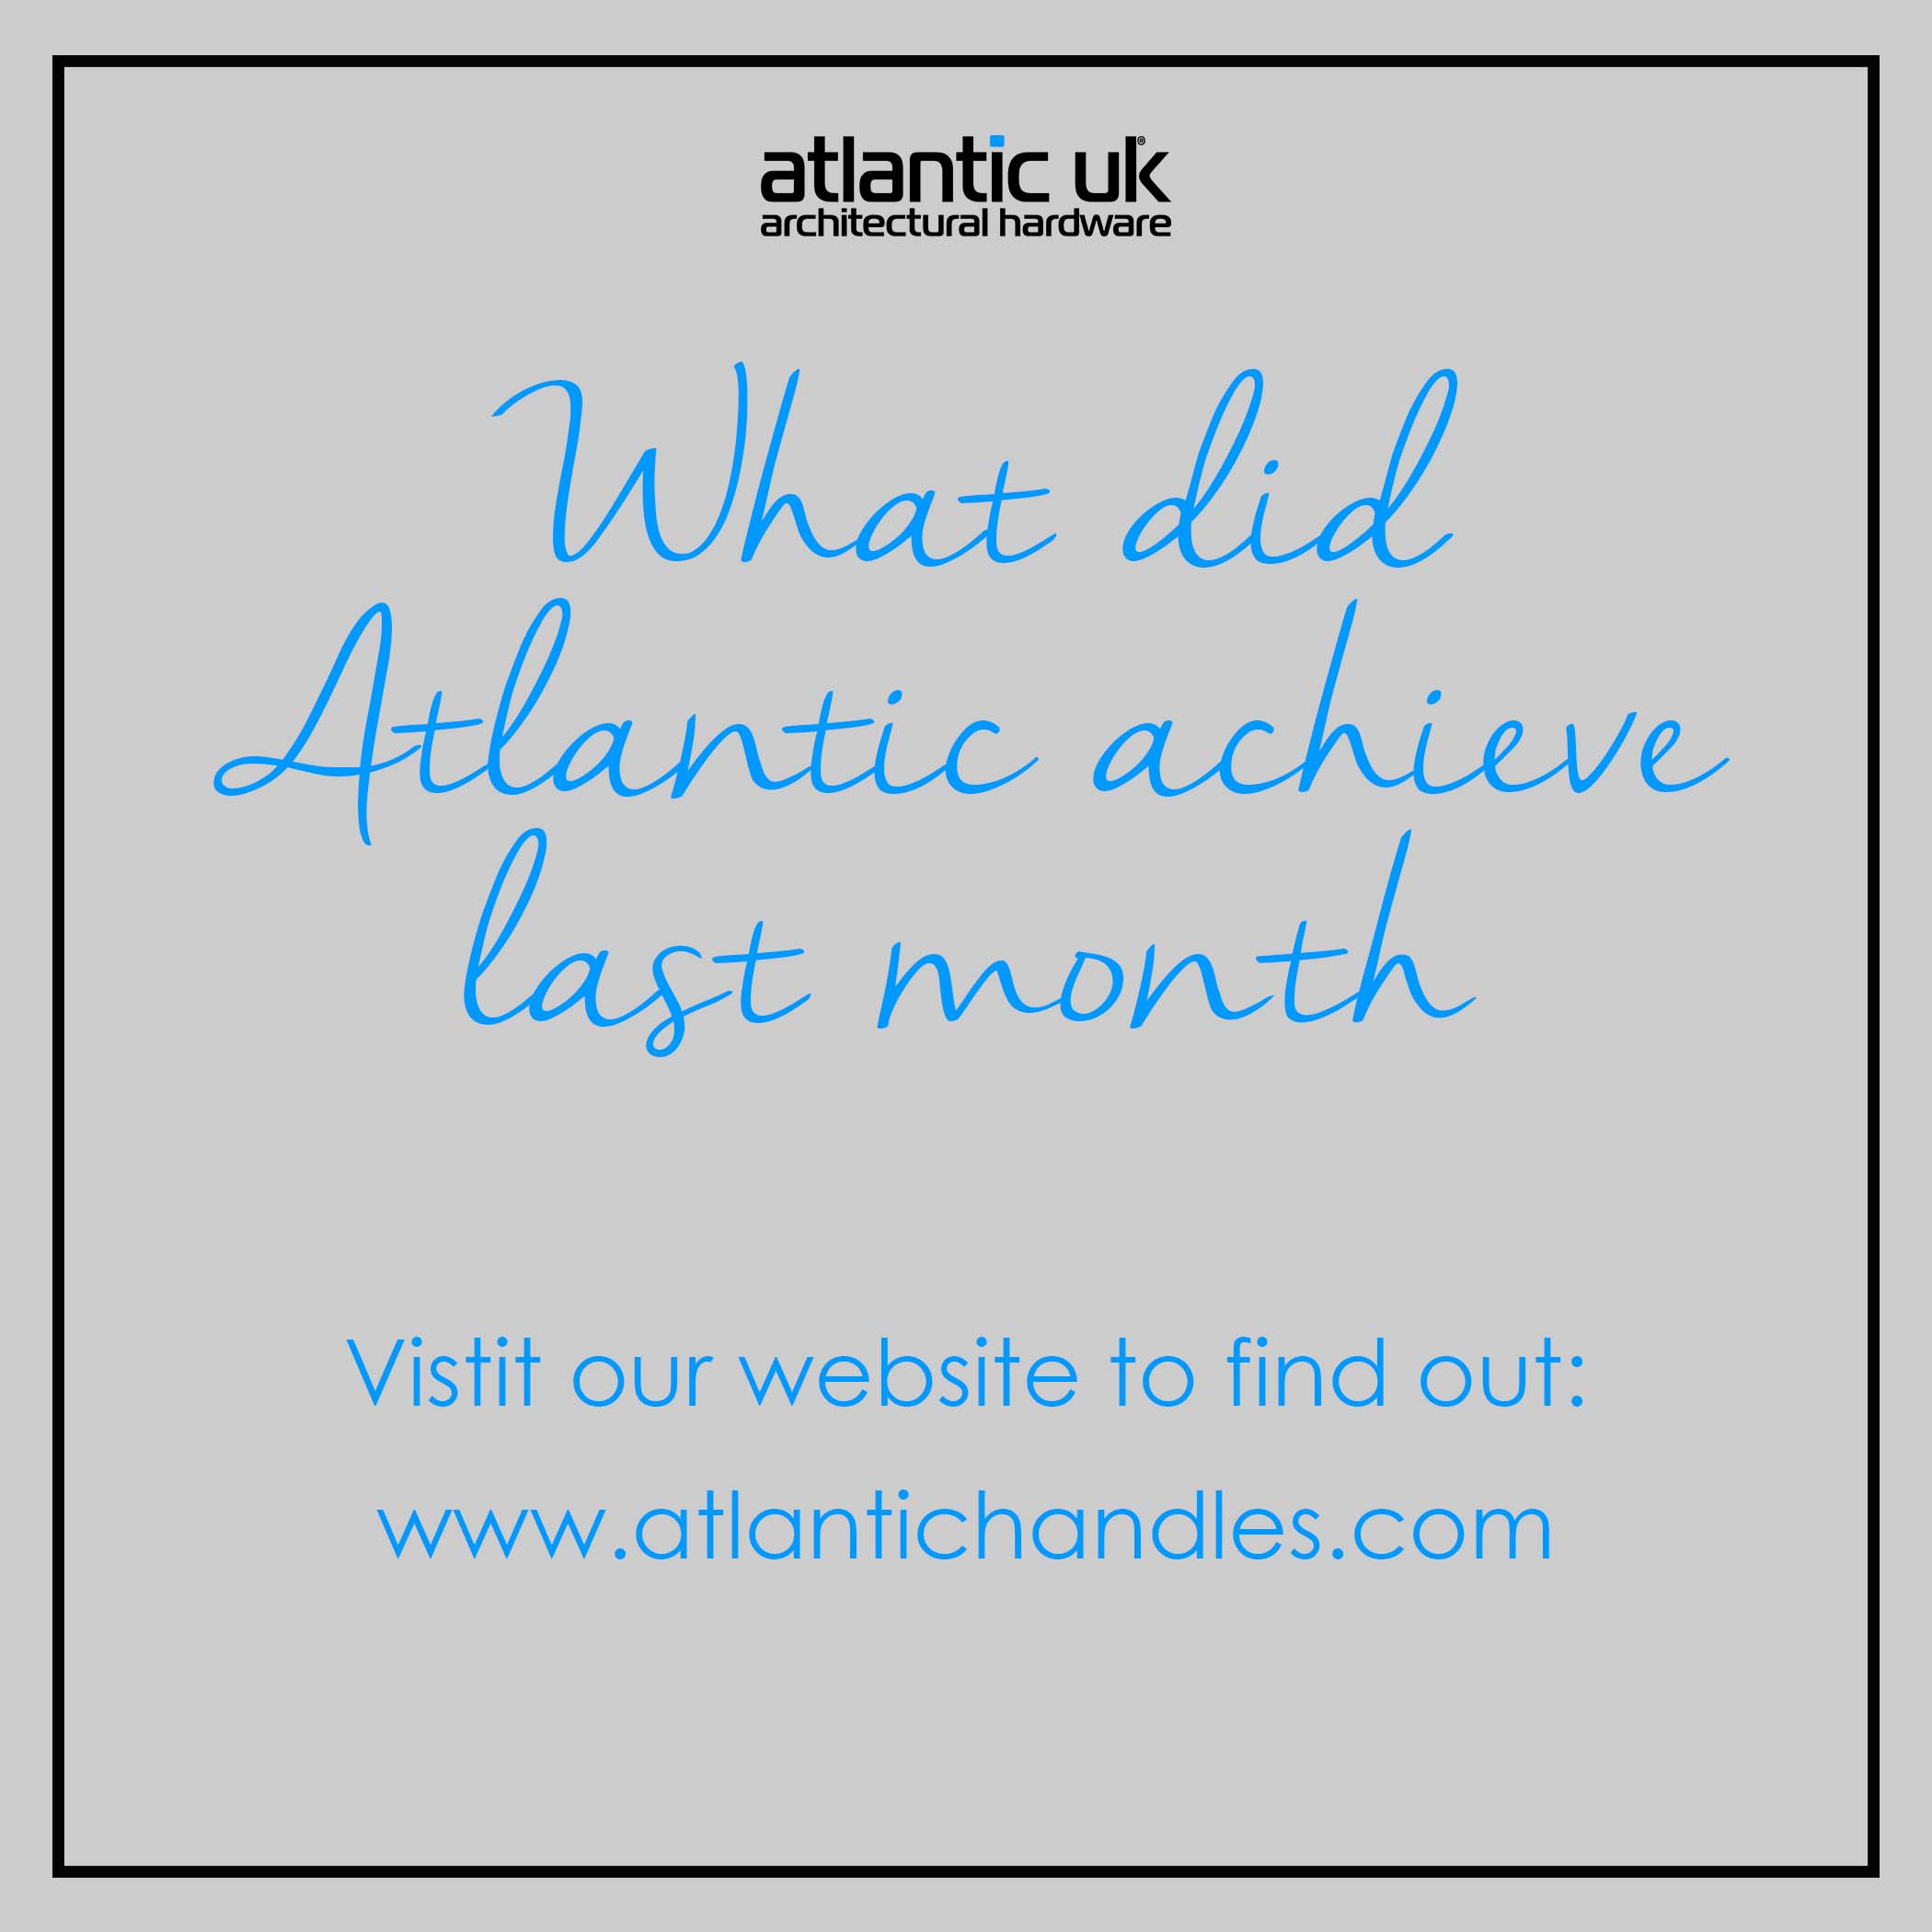 Atlantic’s achievements in July!